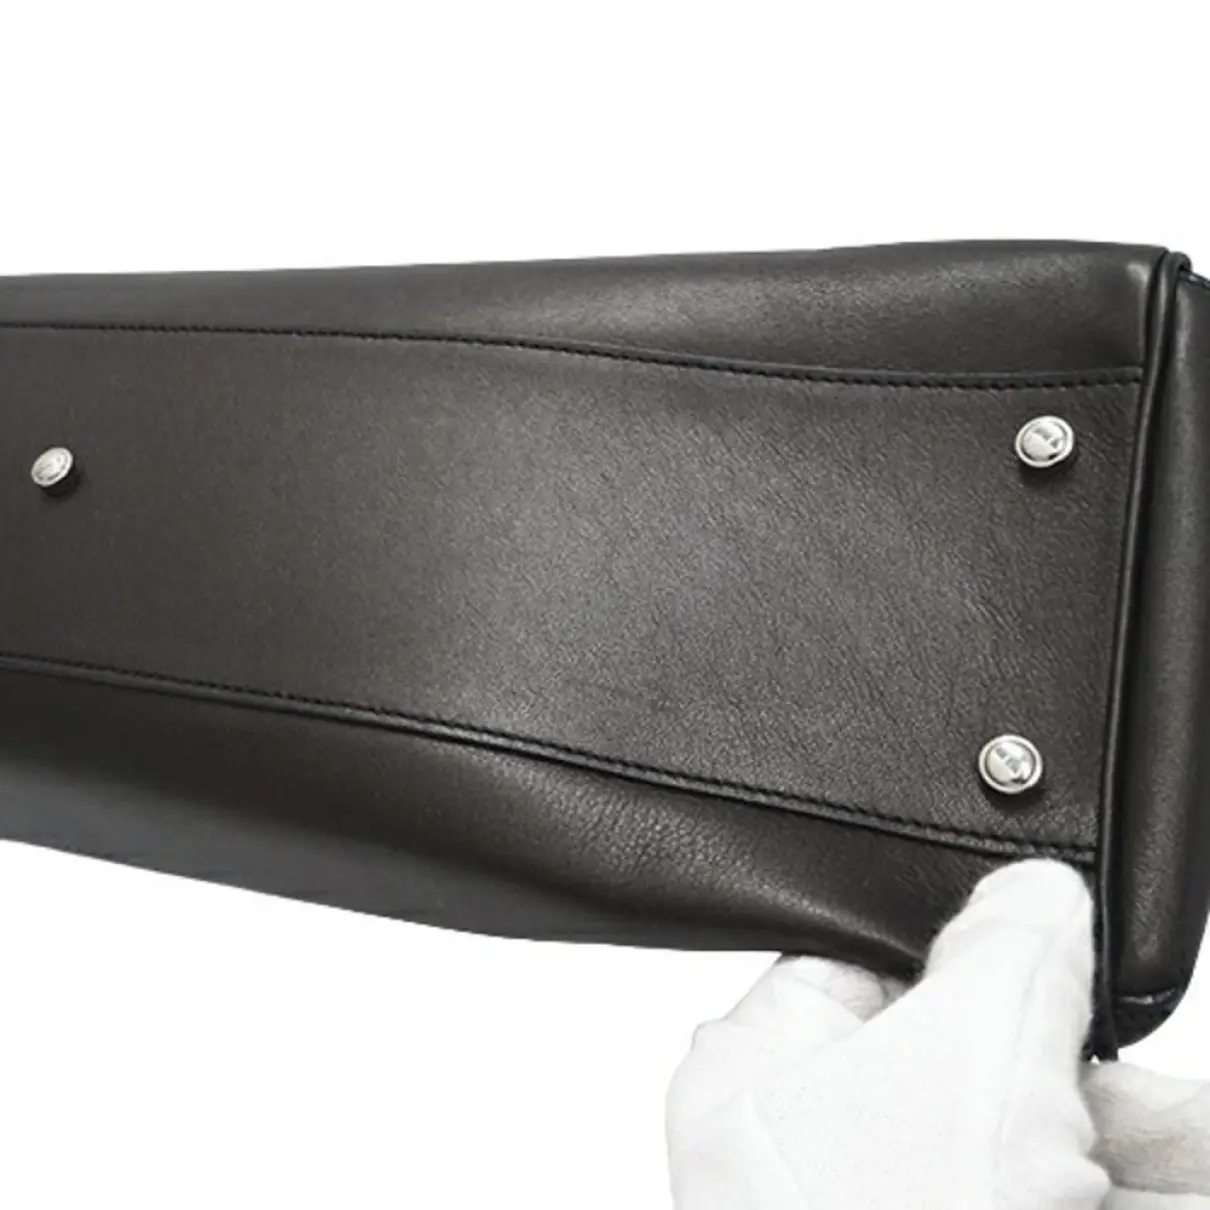 Marcello leather handbag Cartier